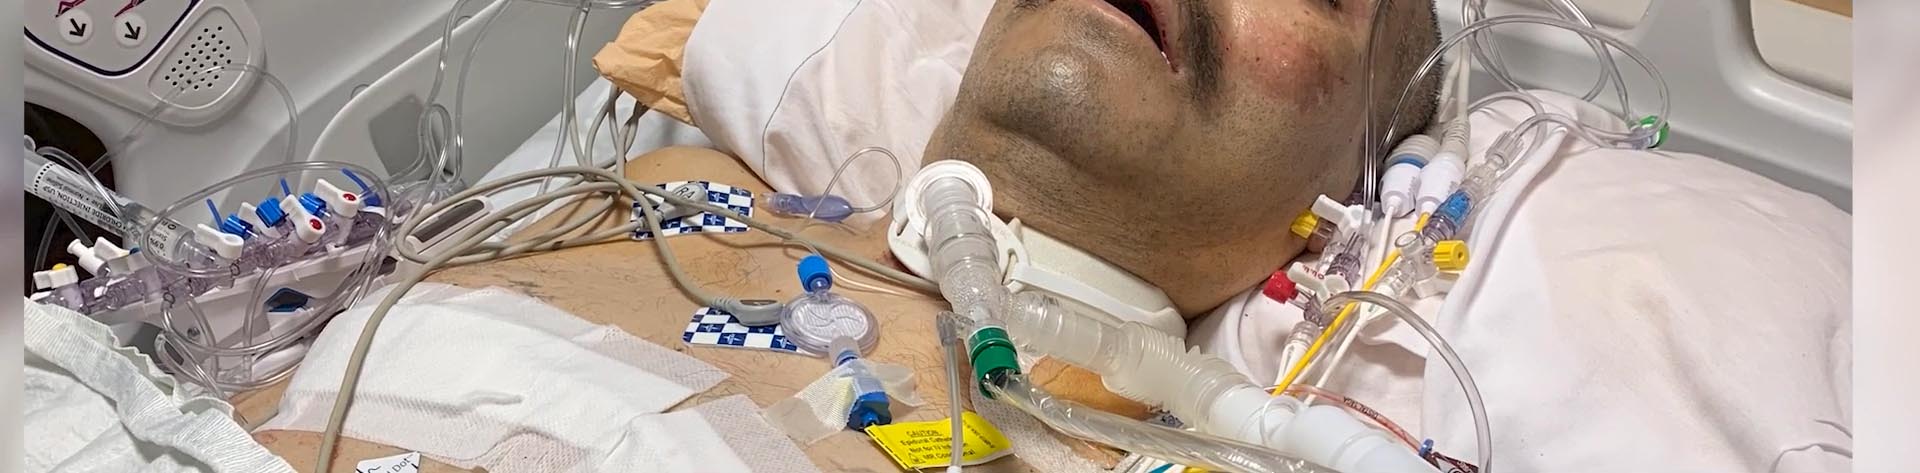 José Graciano en su cama de hospital, recuperándose de COVID